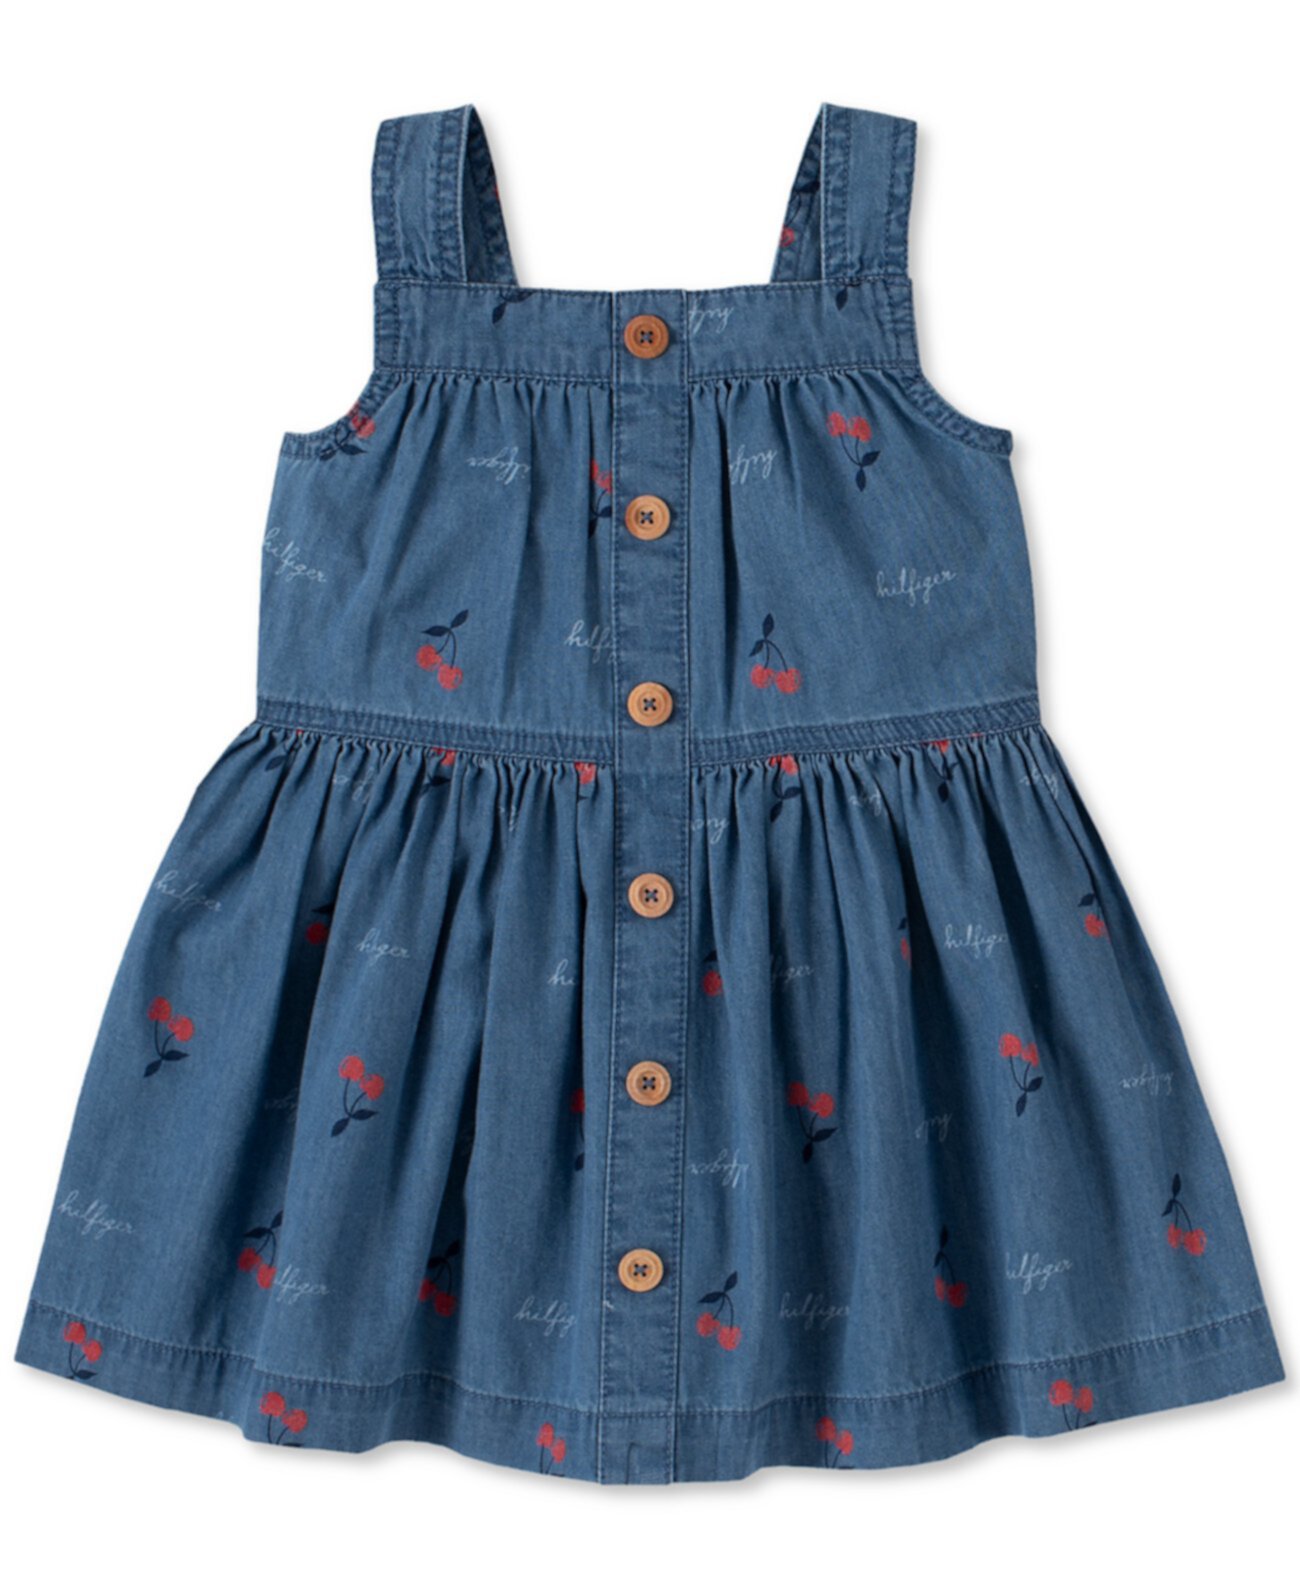 Джинсовое платье с принтом вишни для девочек Tommy Hilfiger